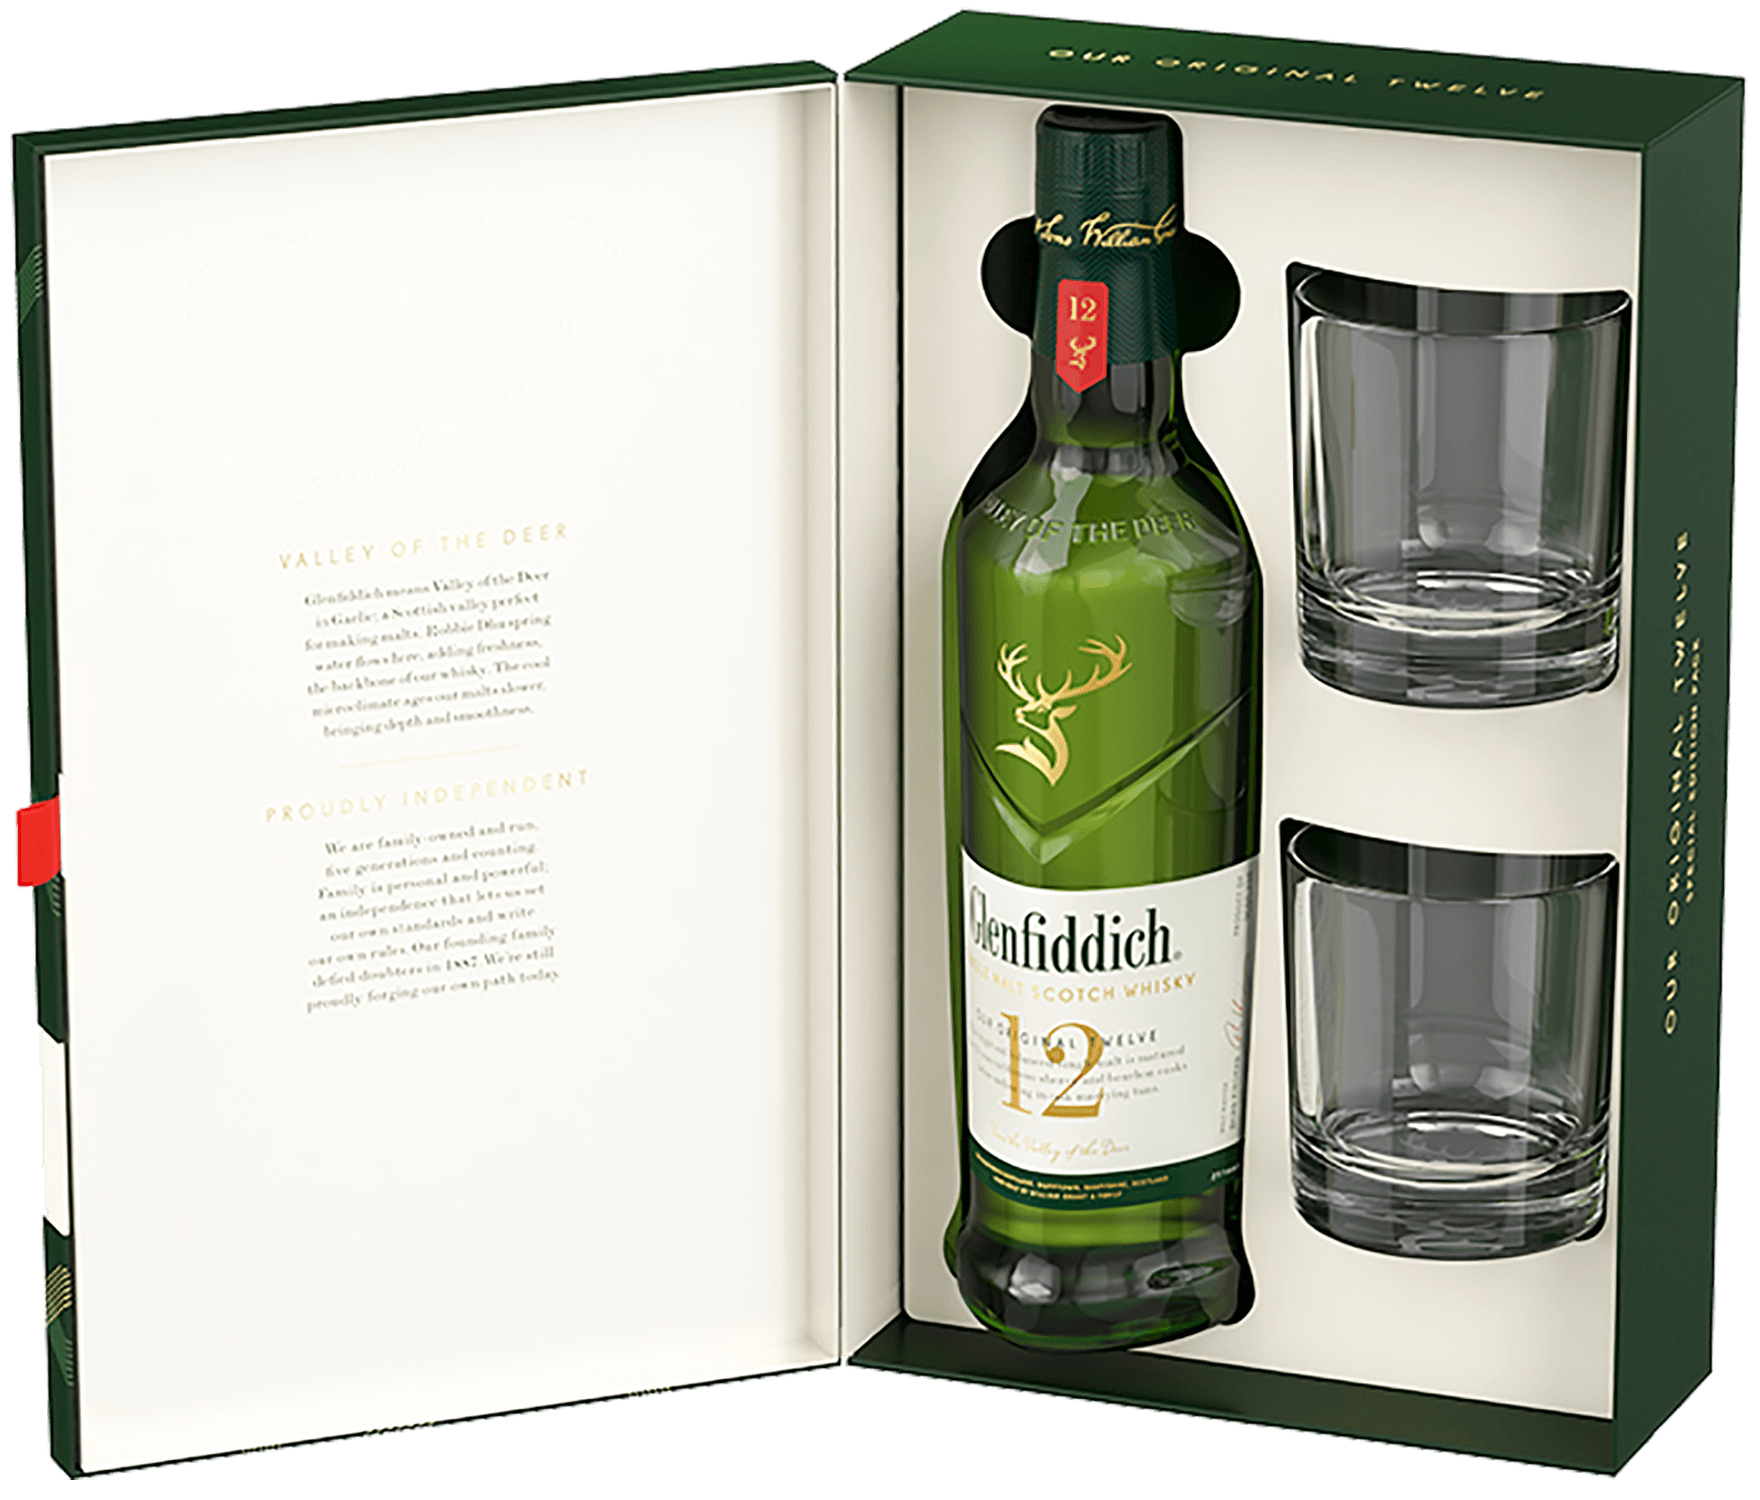 Glenfiddich Single Malt Scotch Whisky 12 y.o. (gift box with 2 glasses) glenfiddich single malt scotch whisky 12 y o gift box with 2 glasses